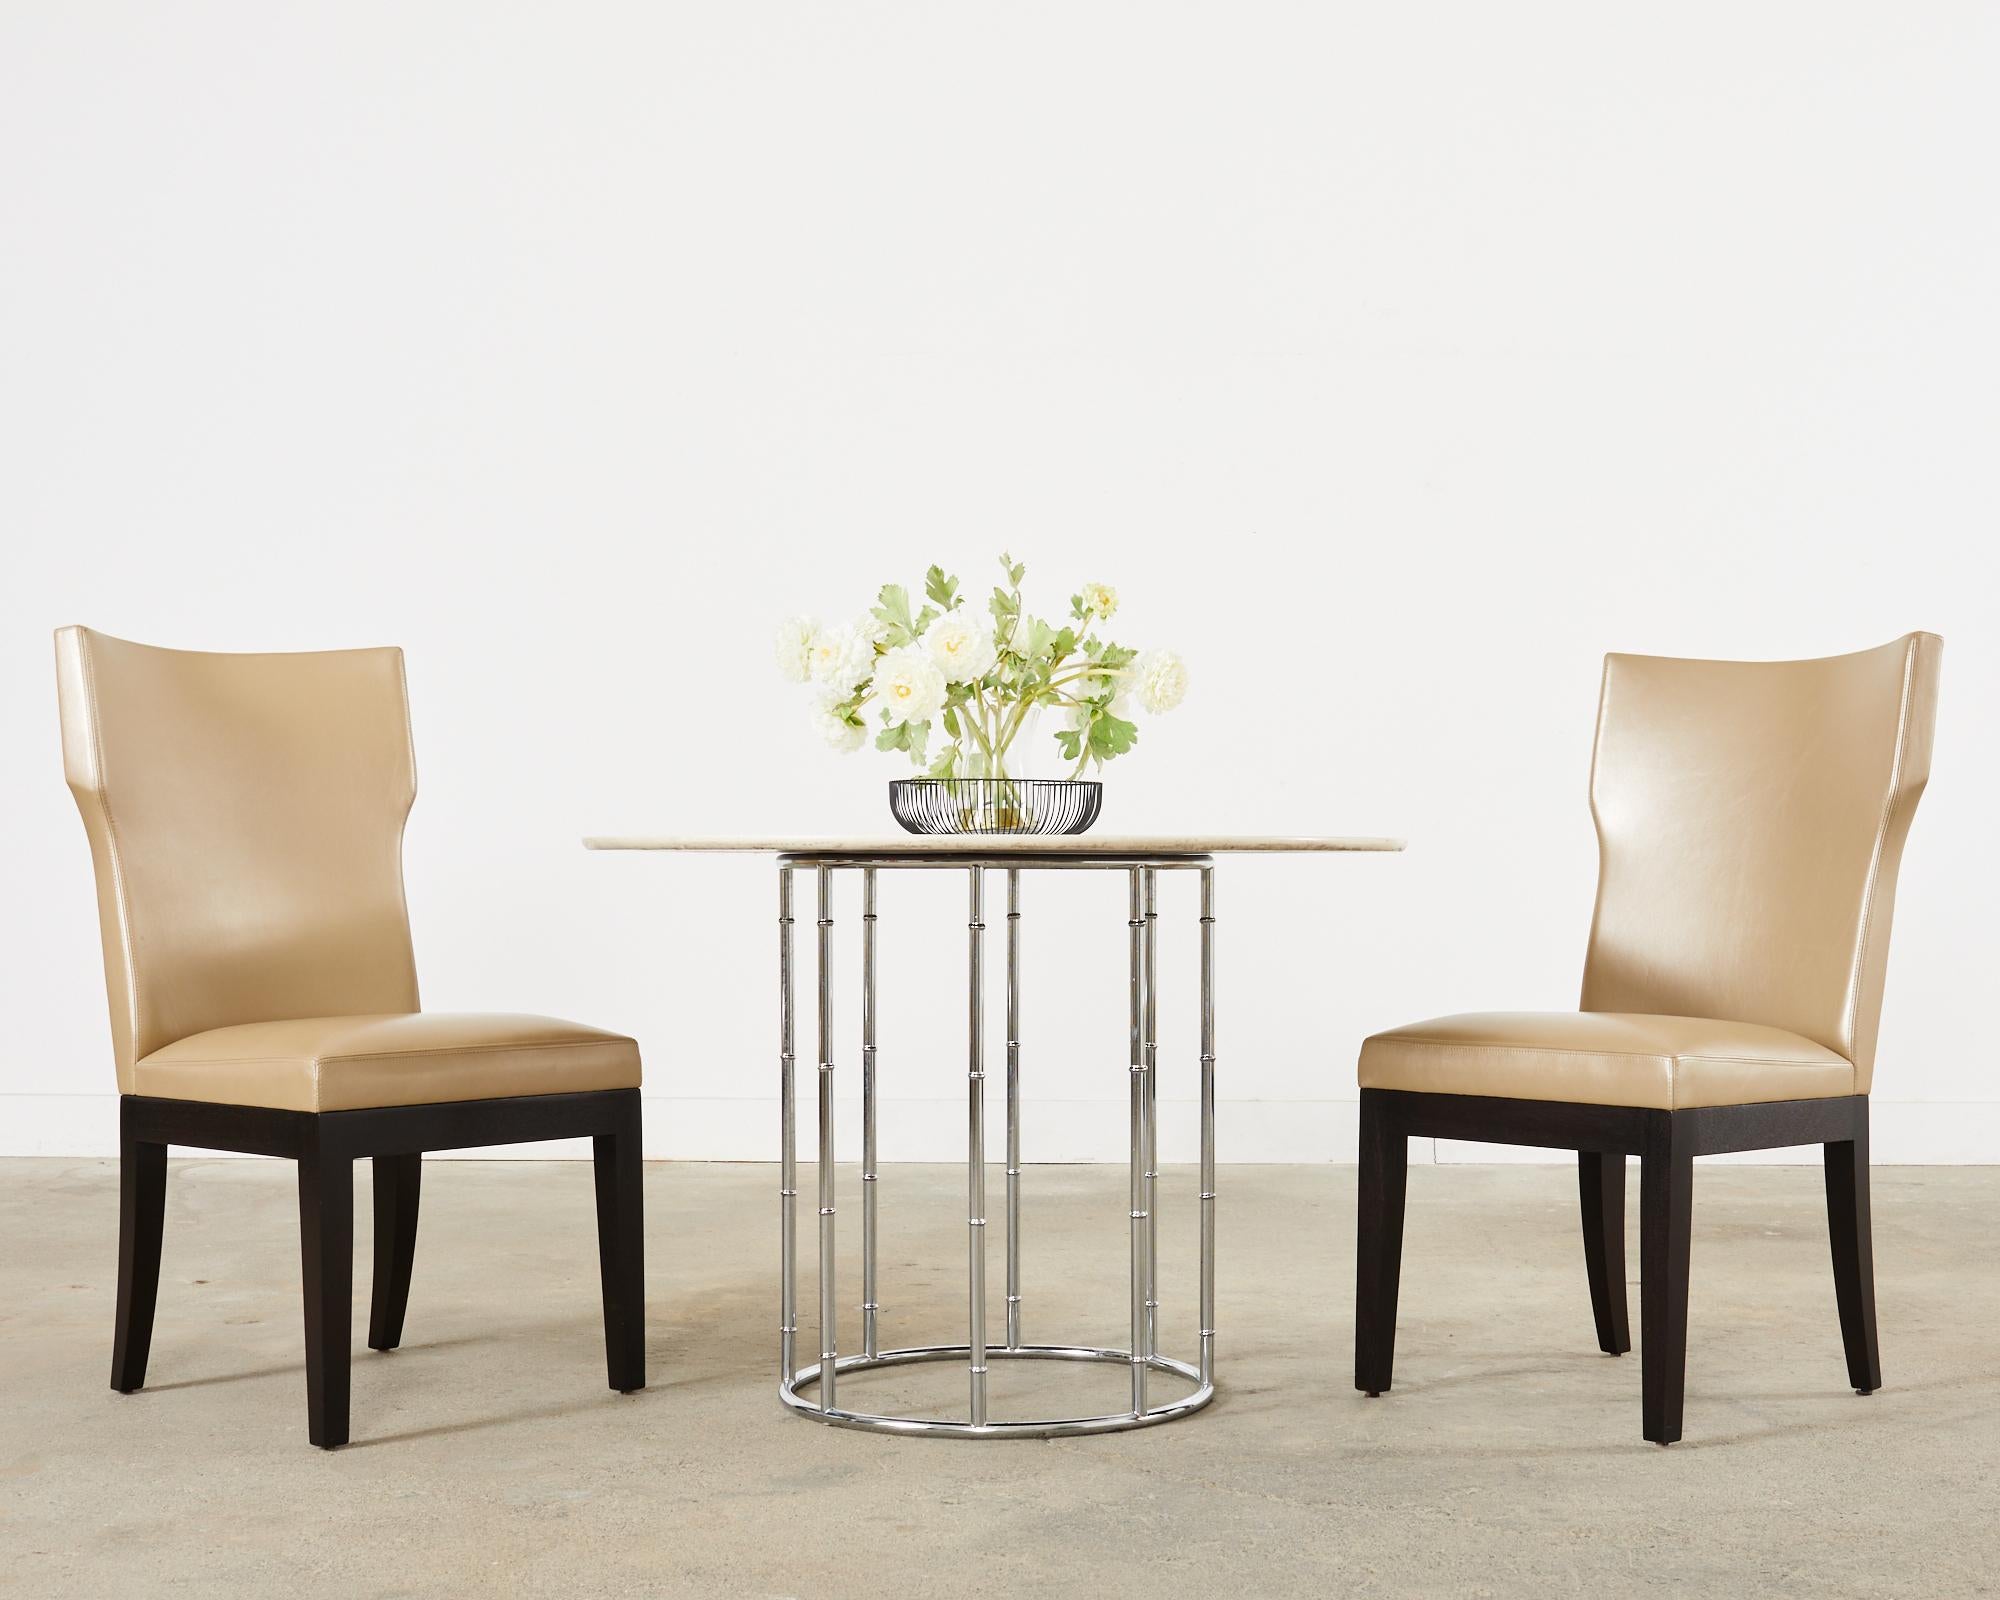 Sublime ensemble de huit chaises de salle à manger en cuir conçu par Christian Liaigre pour Holly HUNT. Les chaises Barbuda se caractérisent par un cadre distinctif avec un dossier incurvé et des ailes subtiles. Les cadres sont laqués noir, ébénisés